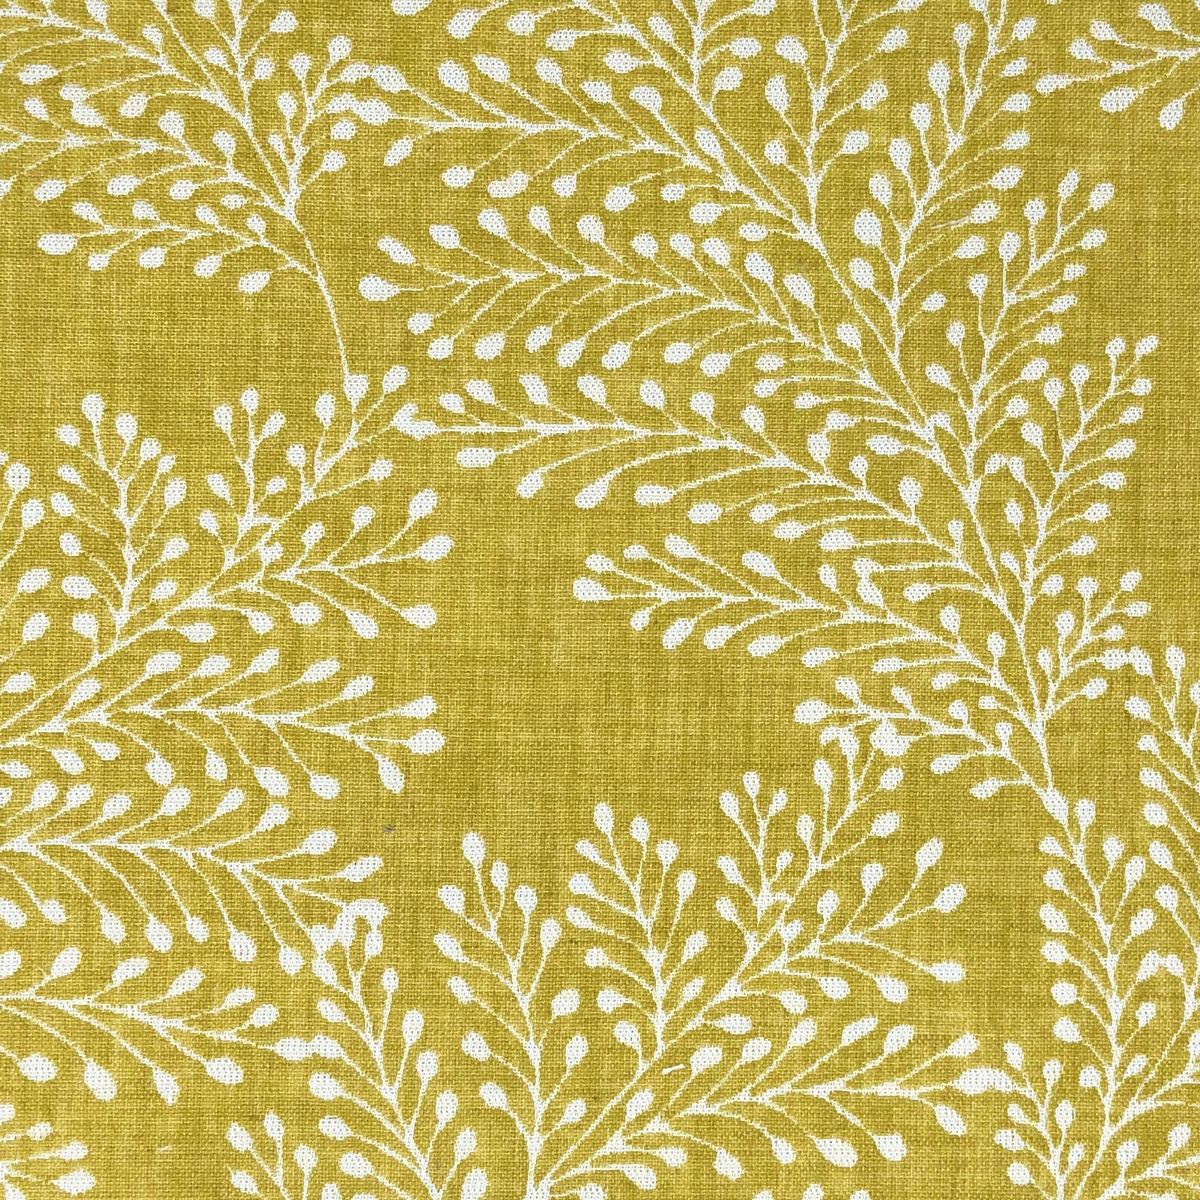 Kensington Ochre Fabric by Chatham Glyn